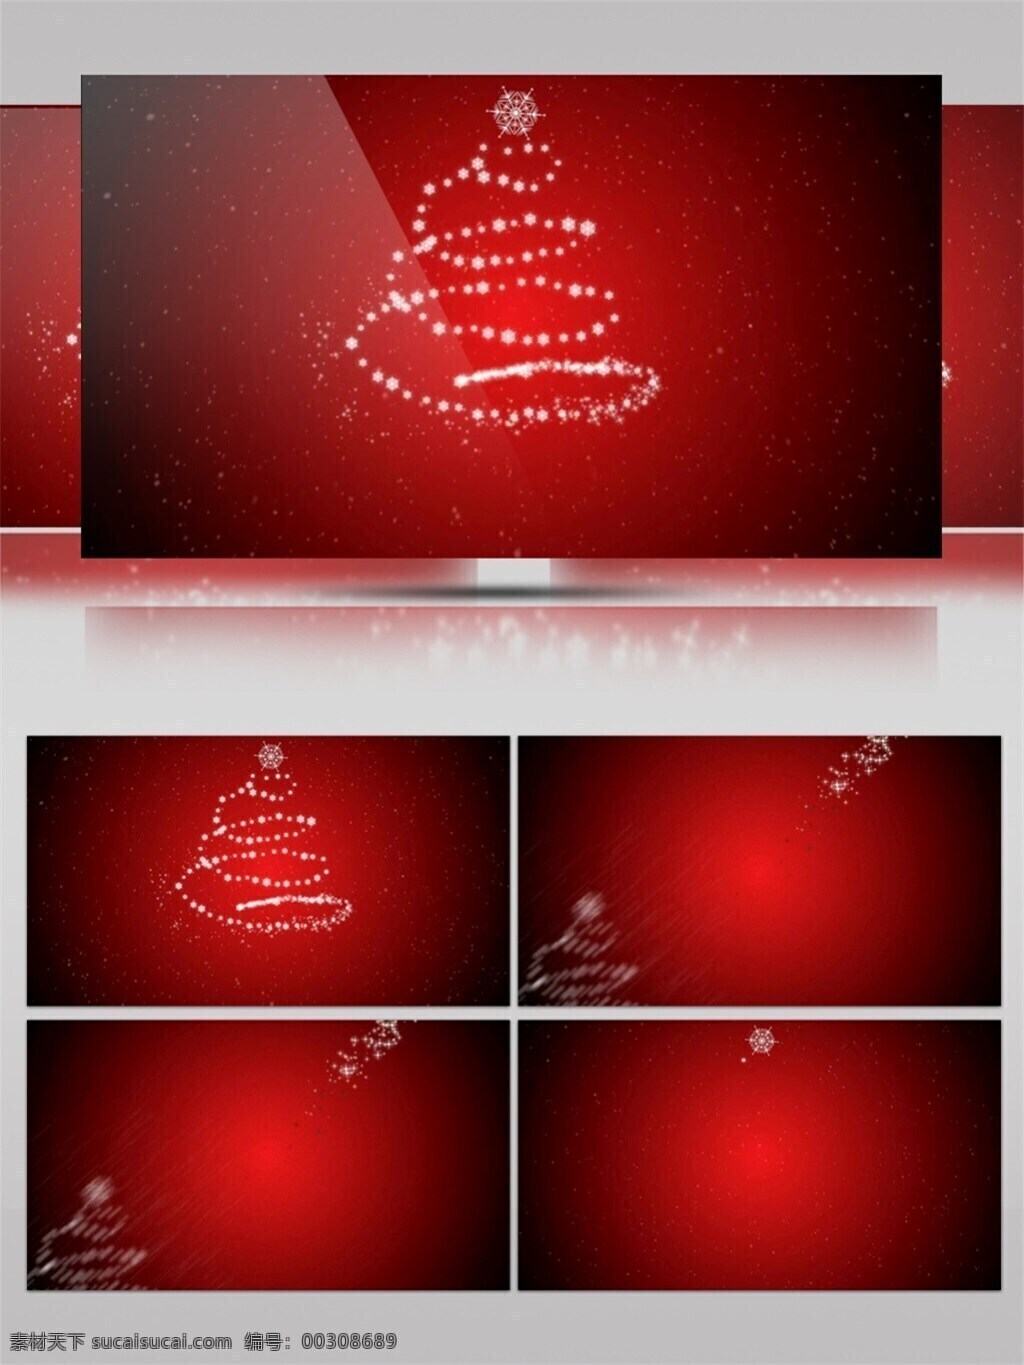 红色 扥 光 圣诞节 视频 节日壁纸 节日庆祝